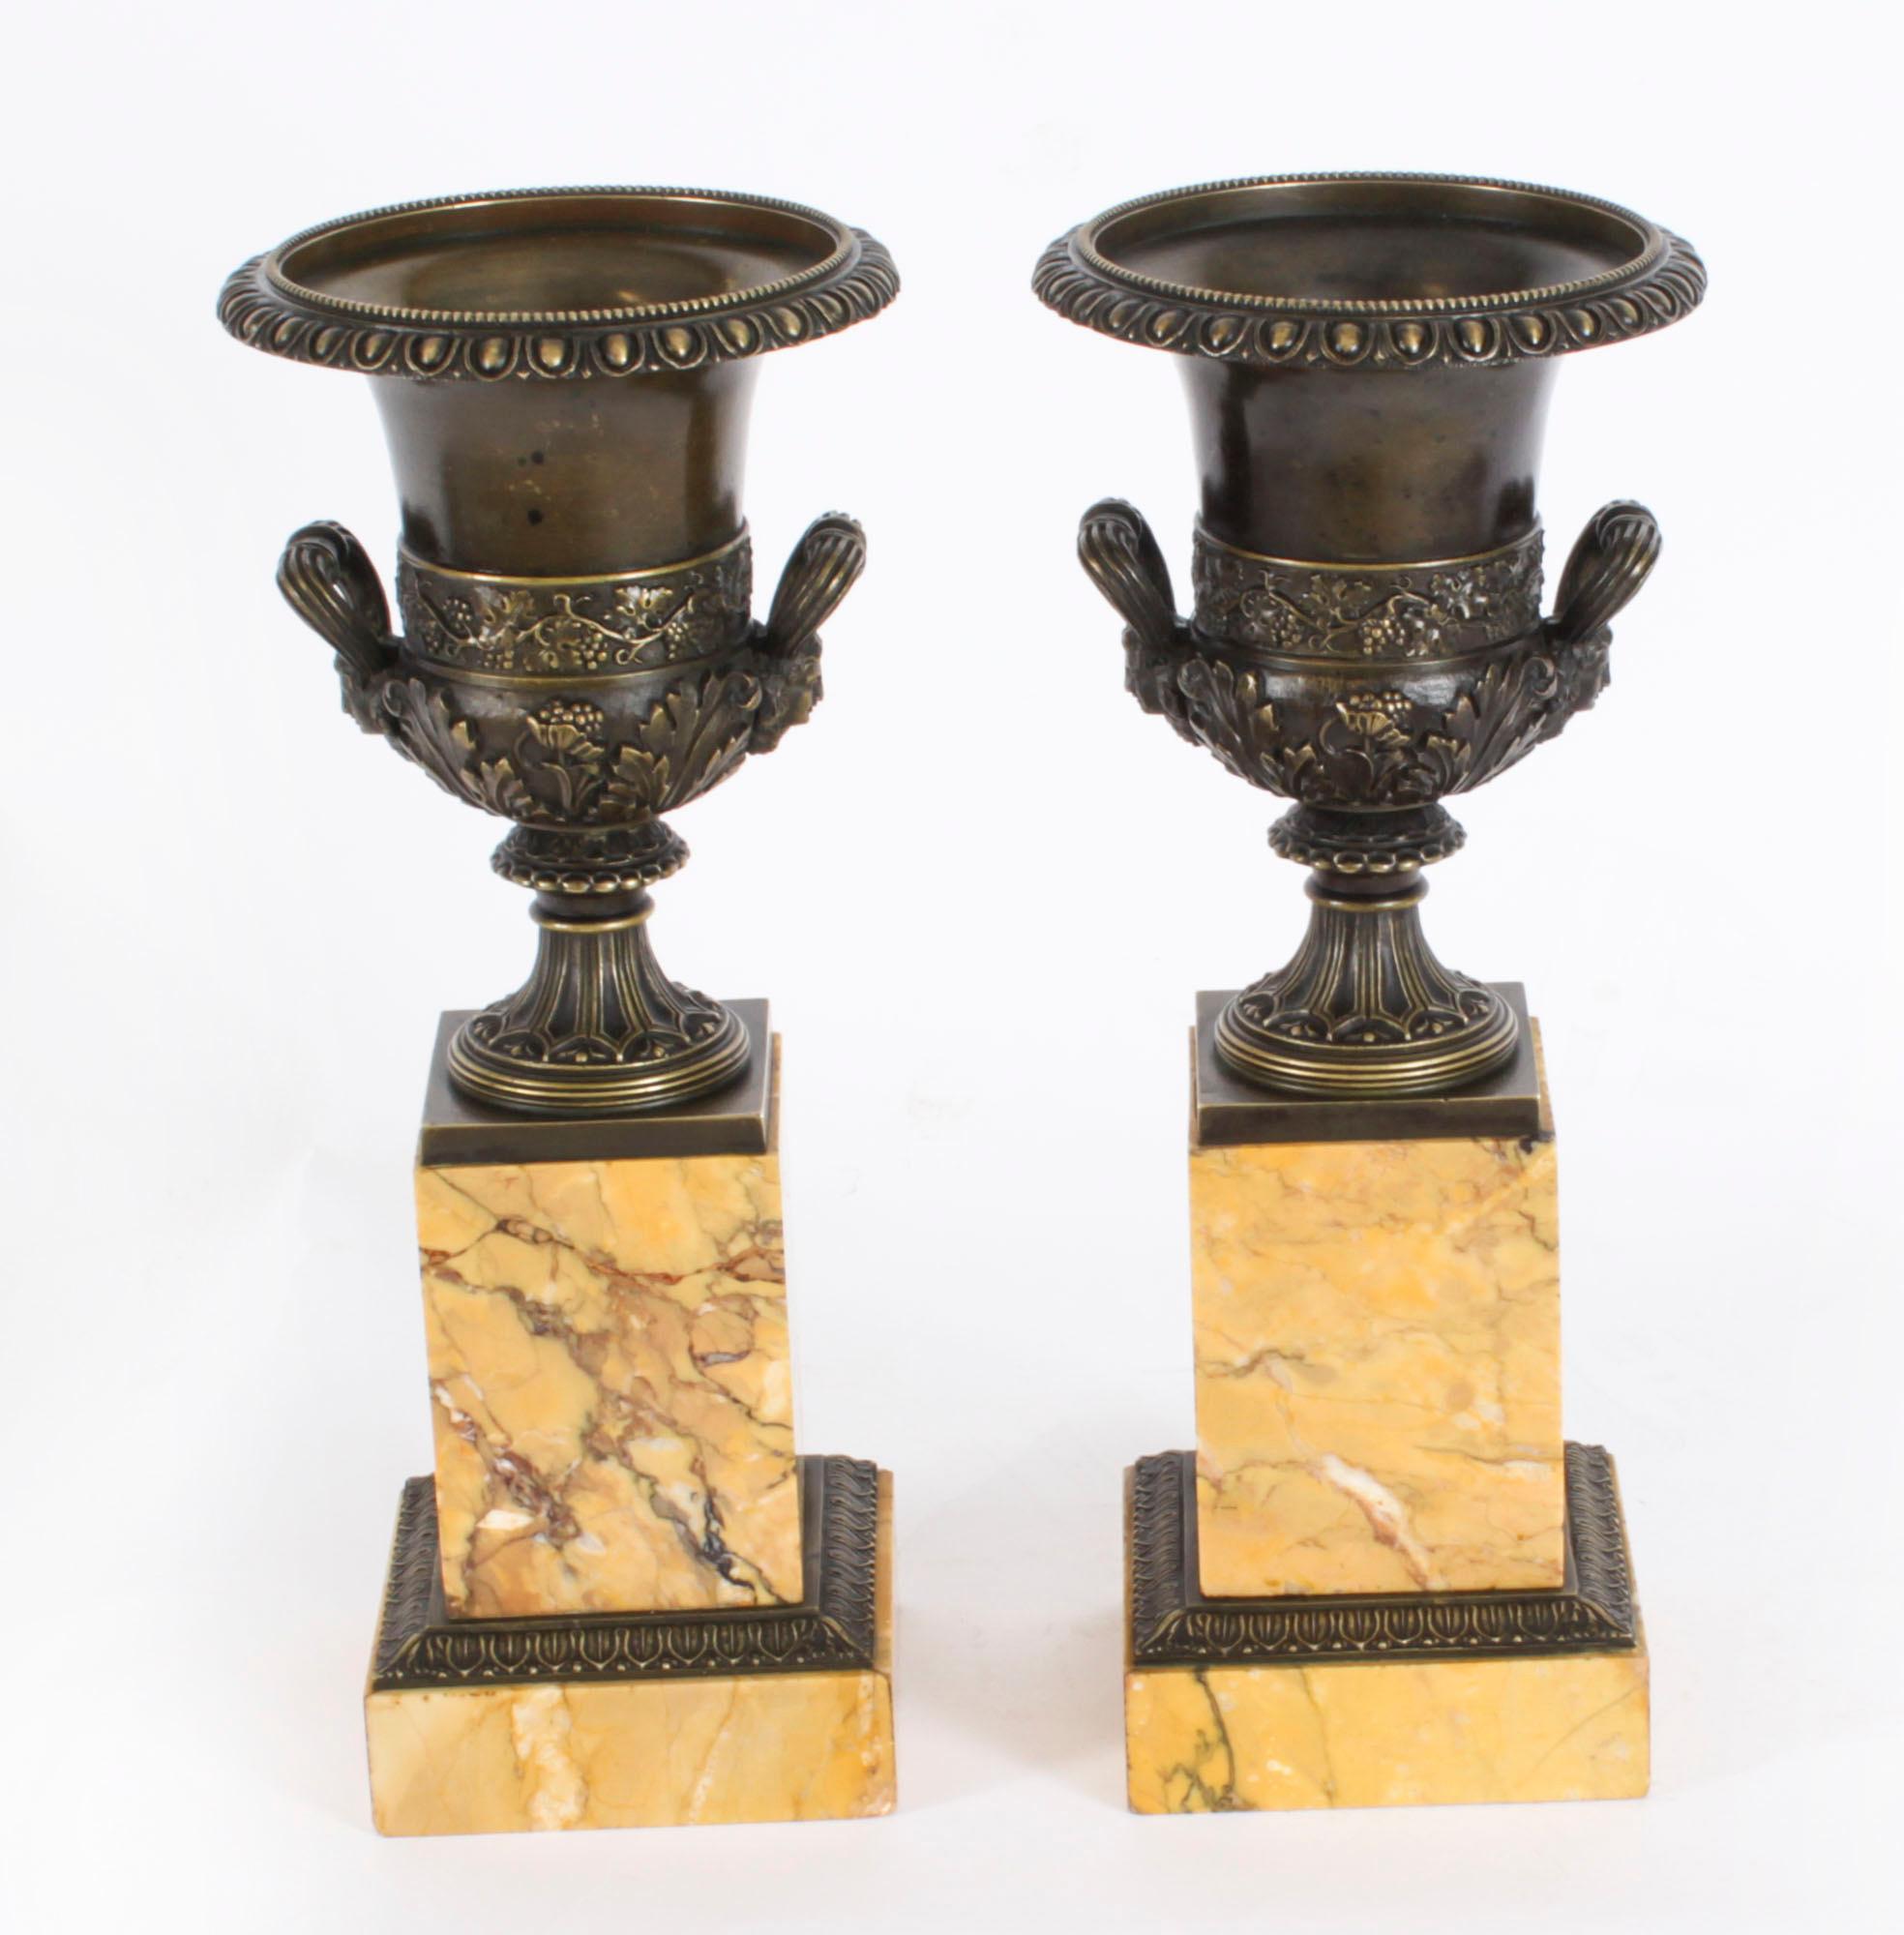 Superbe paire d'urnes anciennes en bronze du Grand Tour et en marbre de Sienne de Borghese Campana, datant d'environ 1870.

Cette paire d'objets patinés  Les urnes campanaires en bronze sont d'après les modèles de Borghese avec des  décor en relief